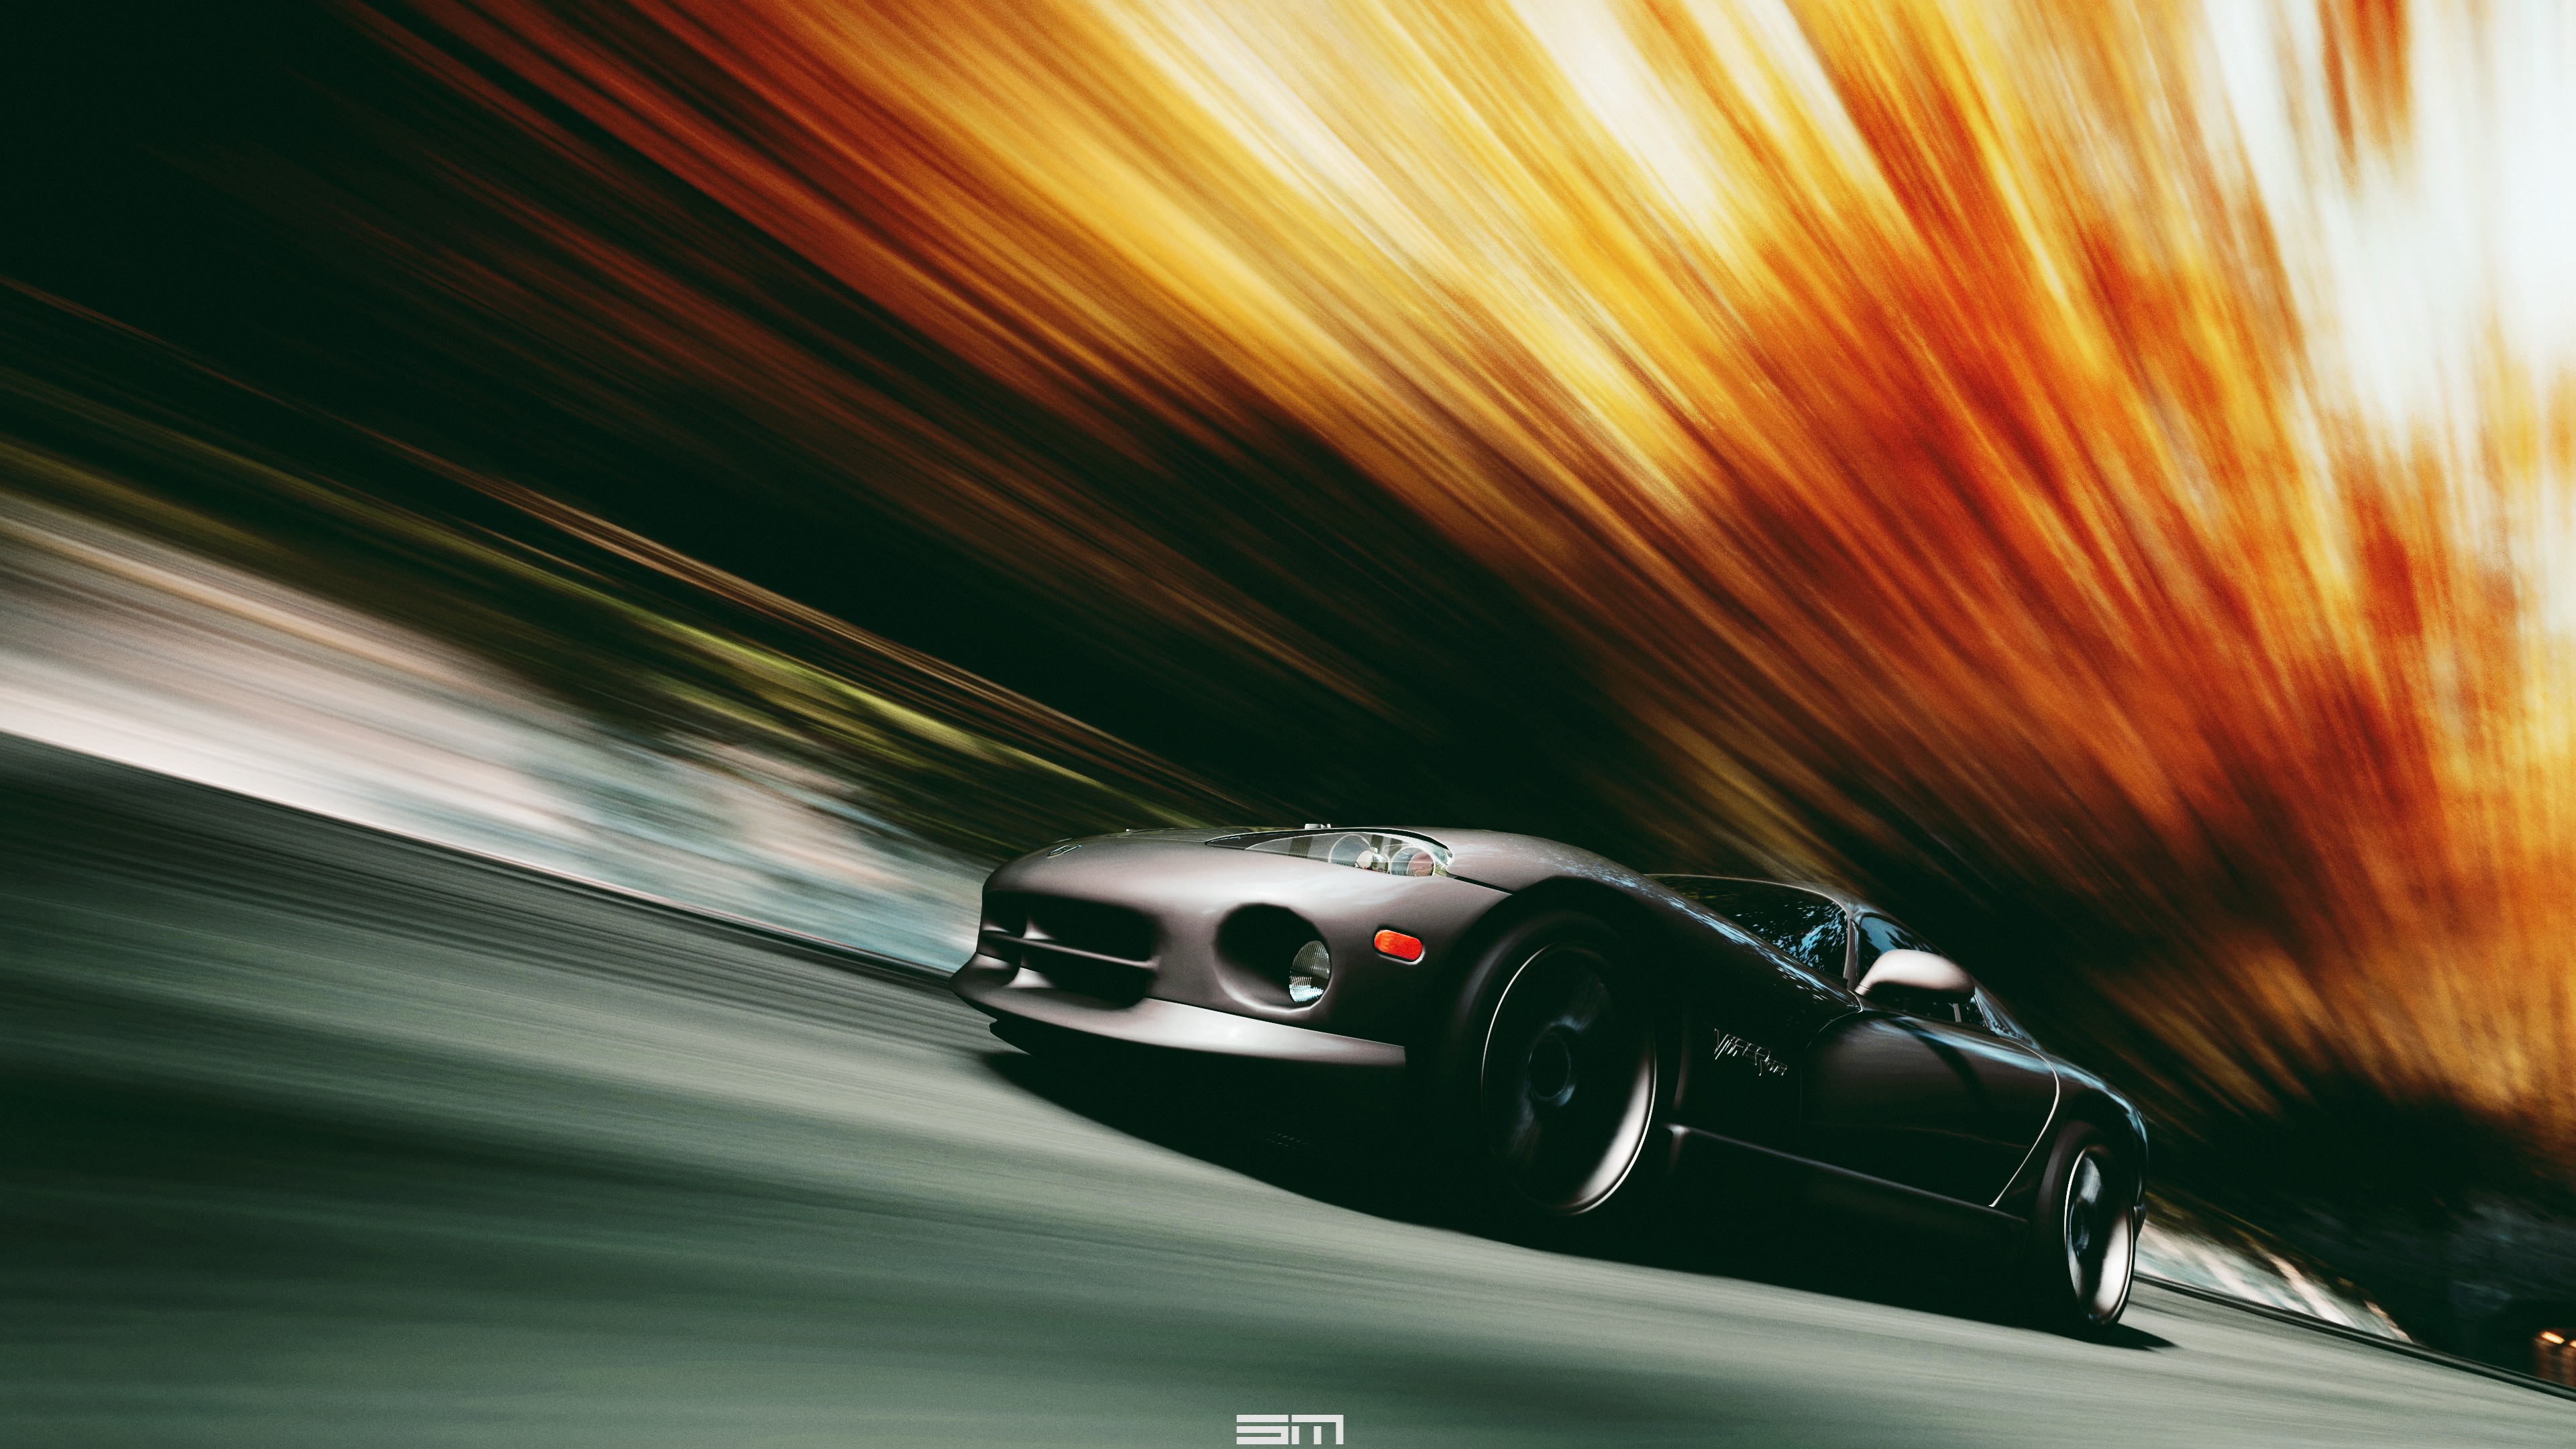 VIPER, Dodge Viper, Car, Motion Blur, Black Cars Wallpaper